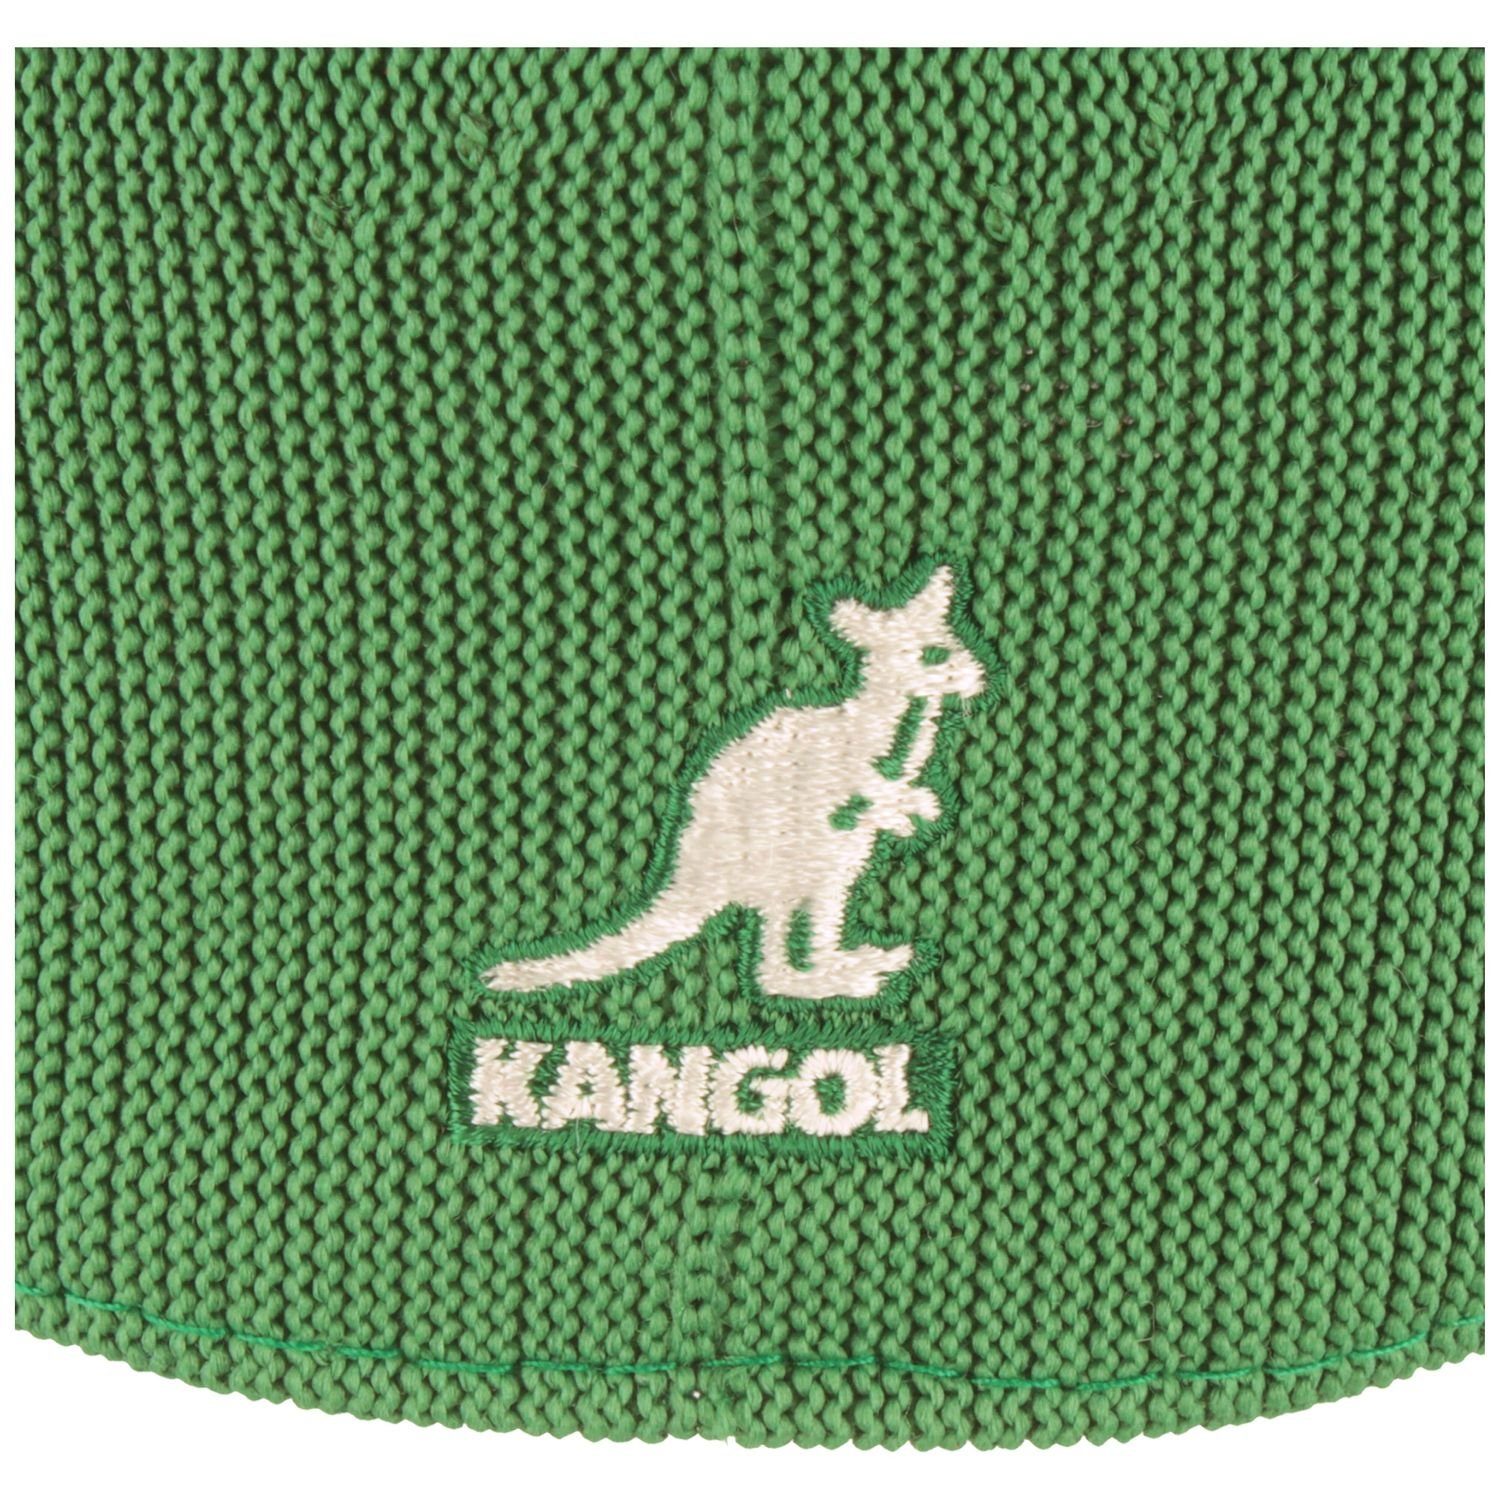 504 Tropic Ventair Kangol Green Cap Schiebermütze TG302-Turf